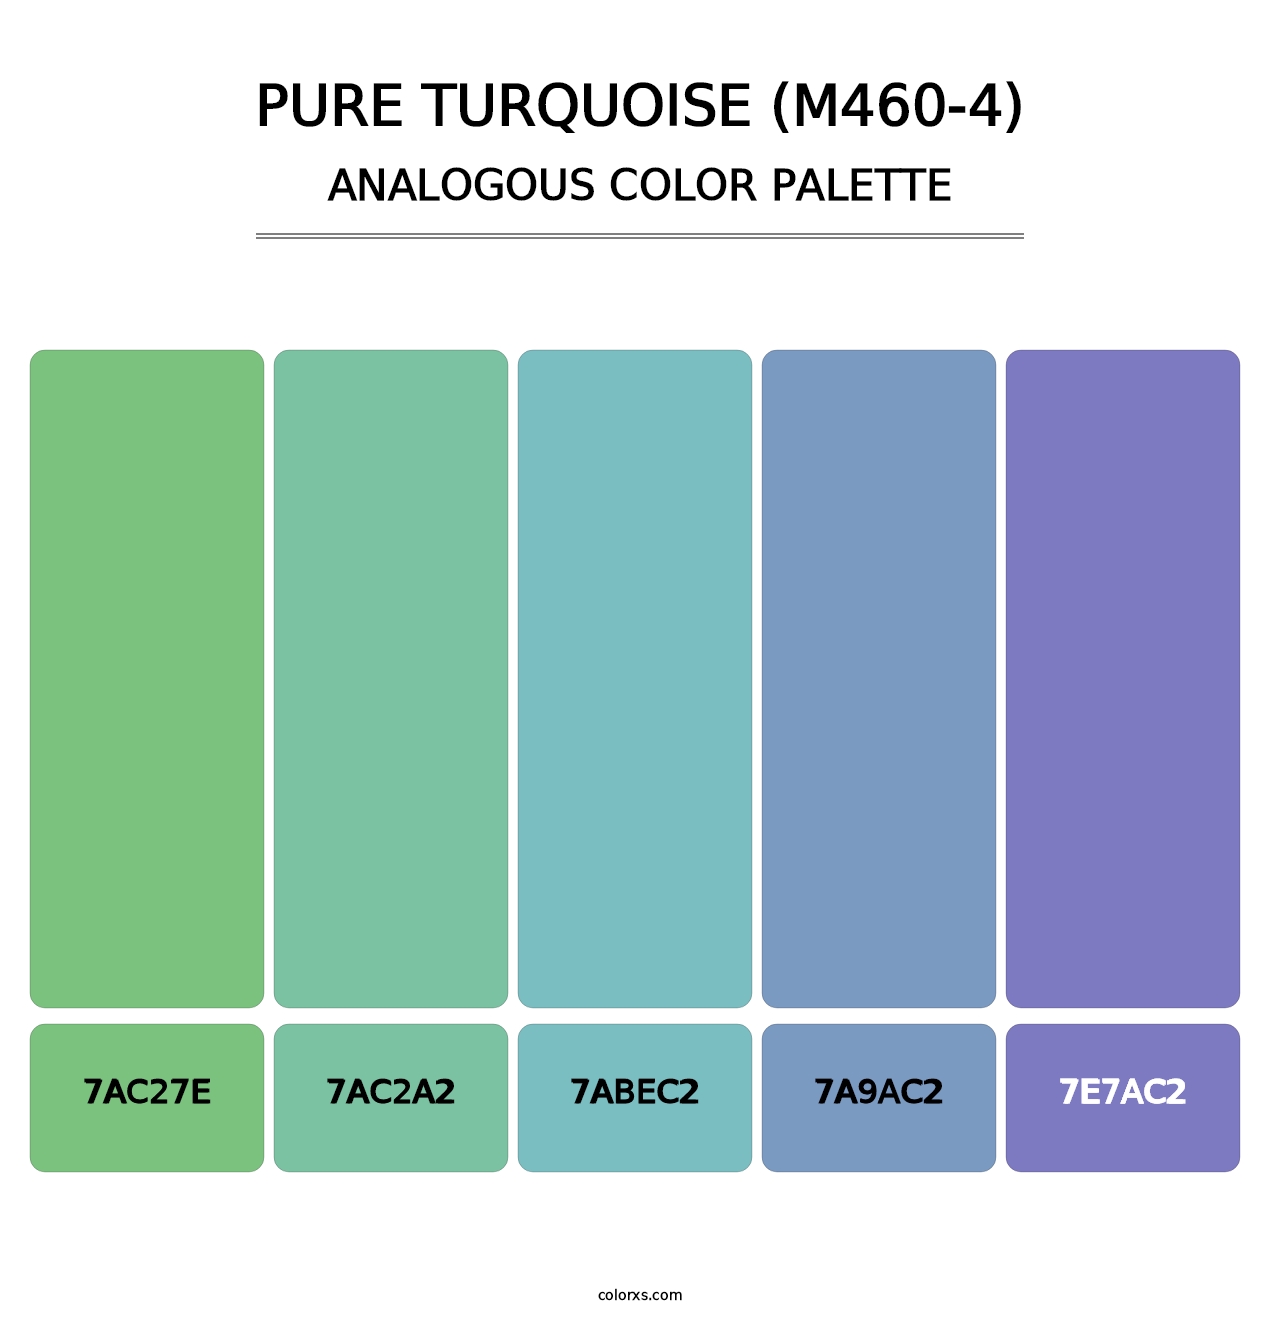 Pure Turquoise (M460-4) - Analogous Color Palette